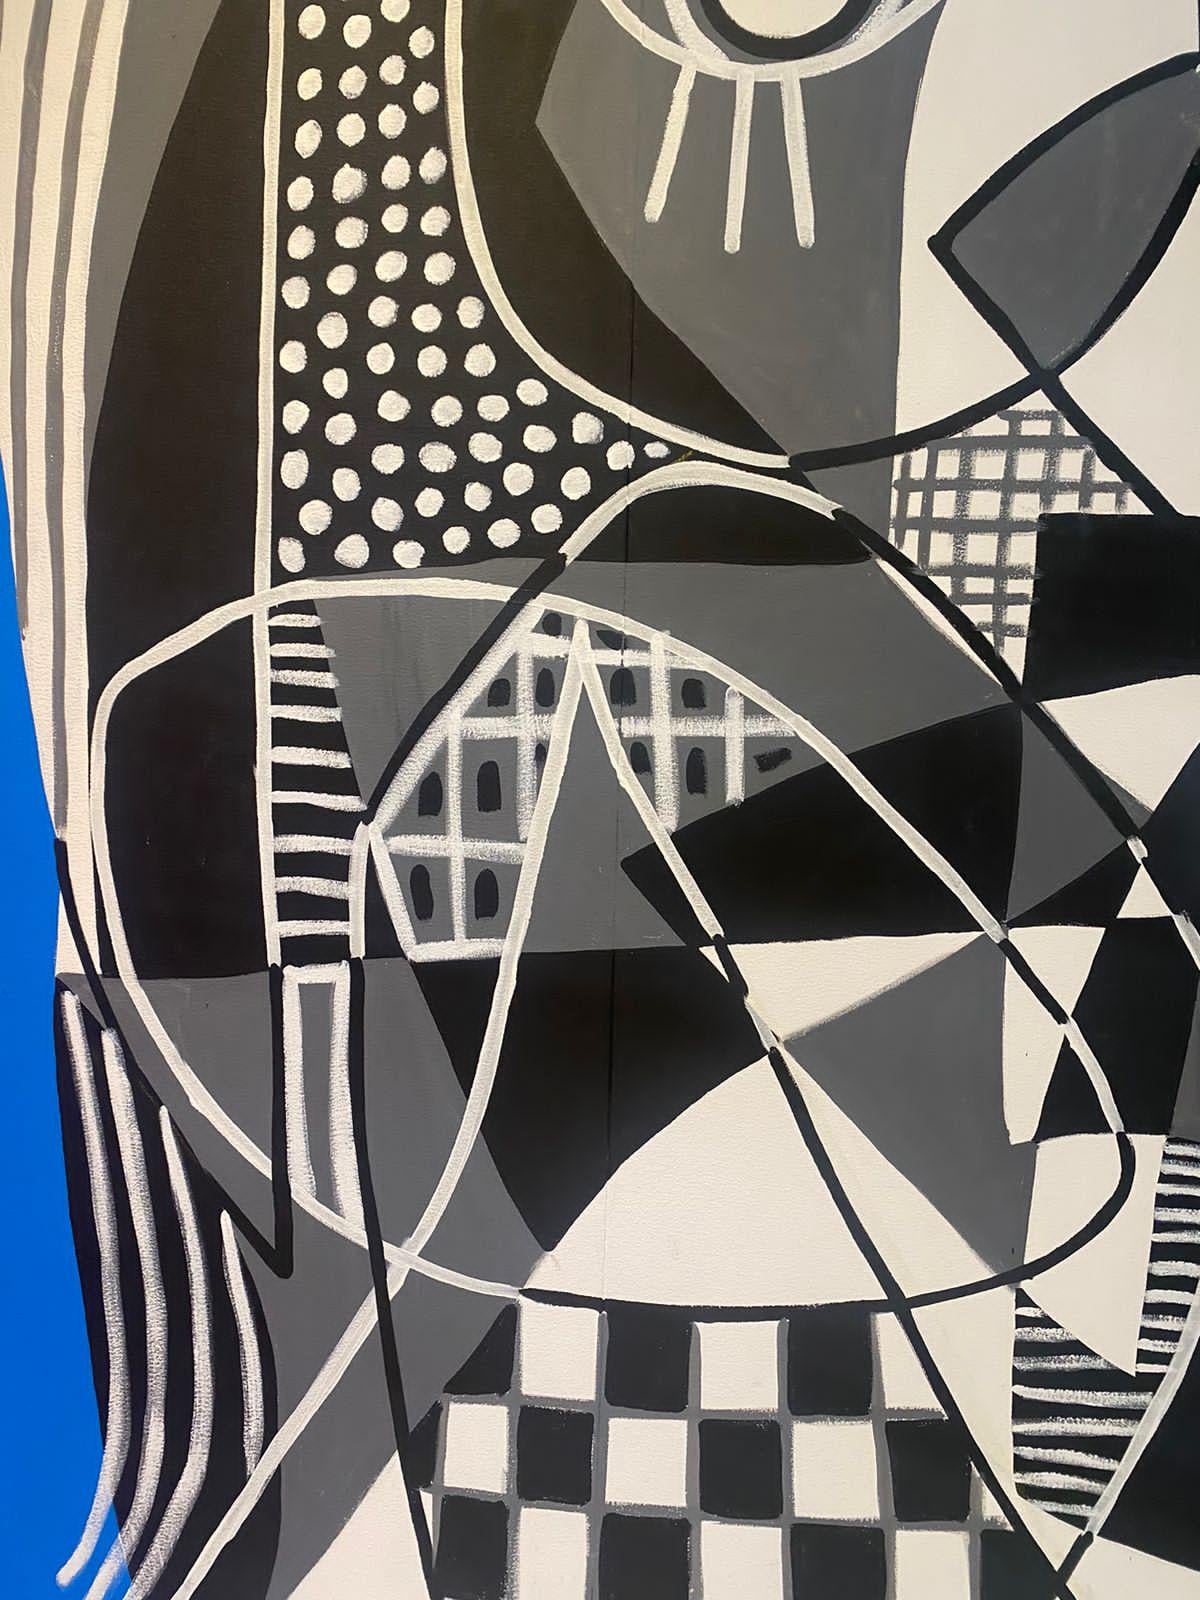 Zeitgenössische Kunst, Abstrakte Malerei
Acryl auf Leinwand
190x190cm
Unterzeichnet 





Über den Künstler
Enrique Pichardo (Mexiko-Stadt, 1973) ist Absolvent der Escuela Nacional de Pintura, Escultura y Grabado (ENPEG) 